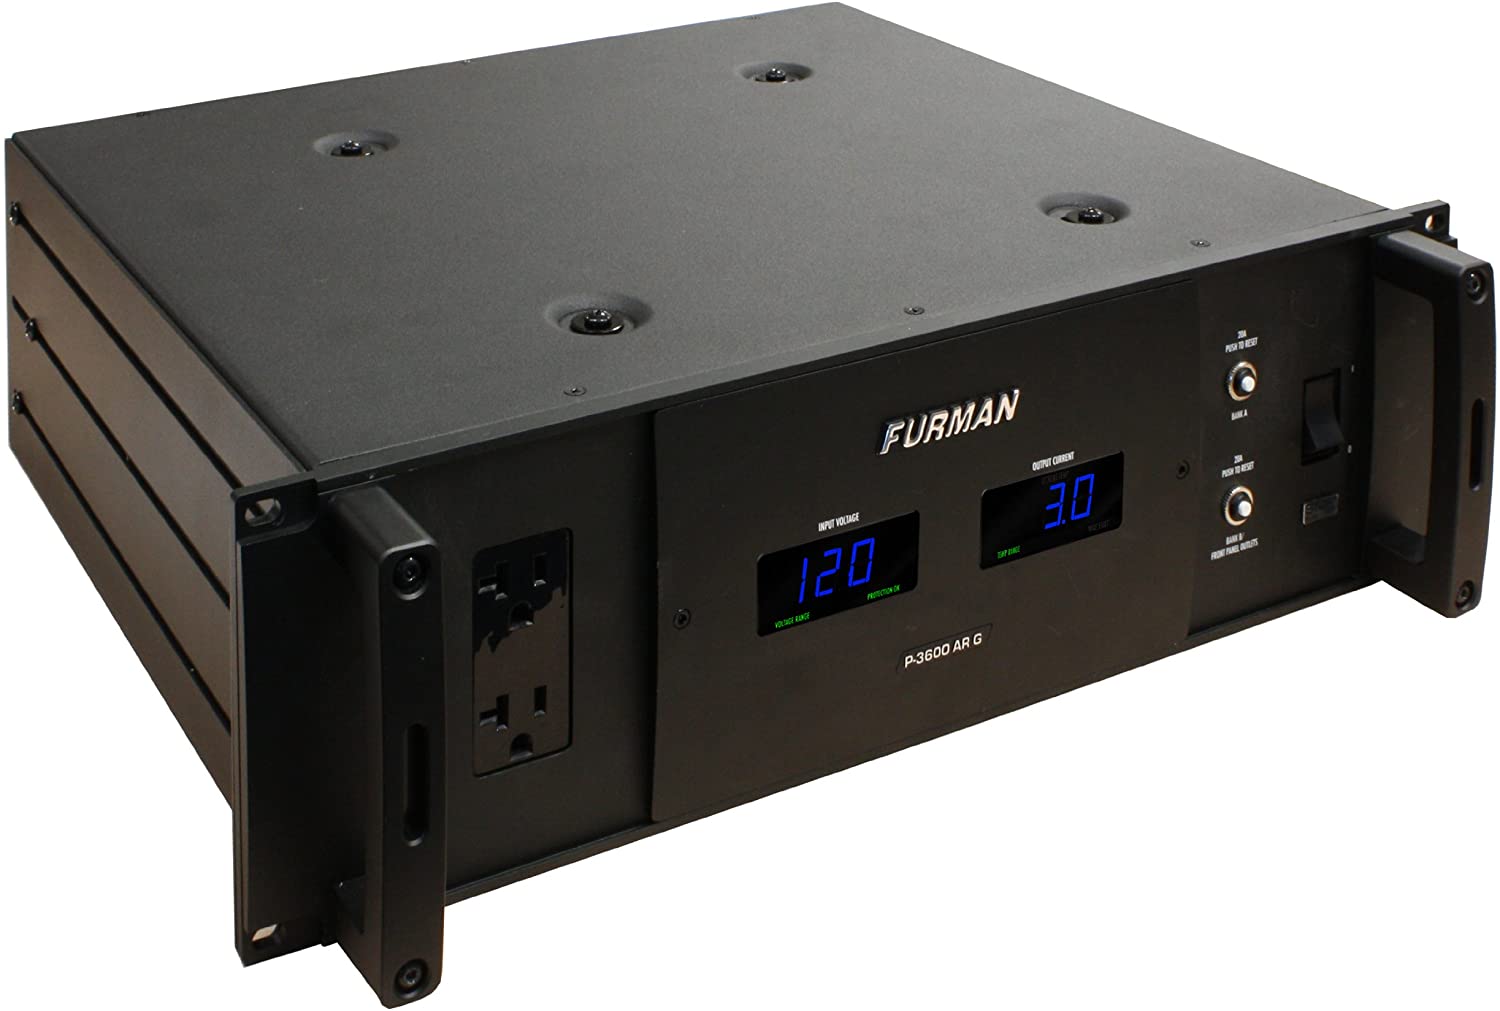 FURman p-3600 ar g regulador de voltaje / acondicionador de energía global 30a